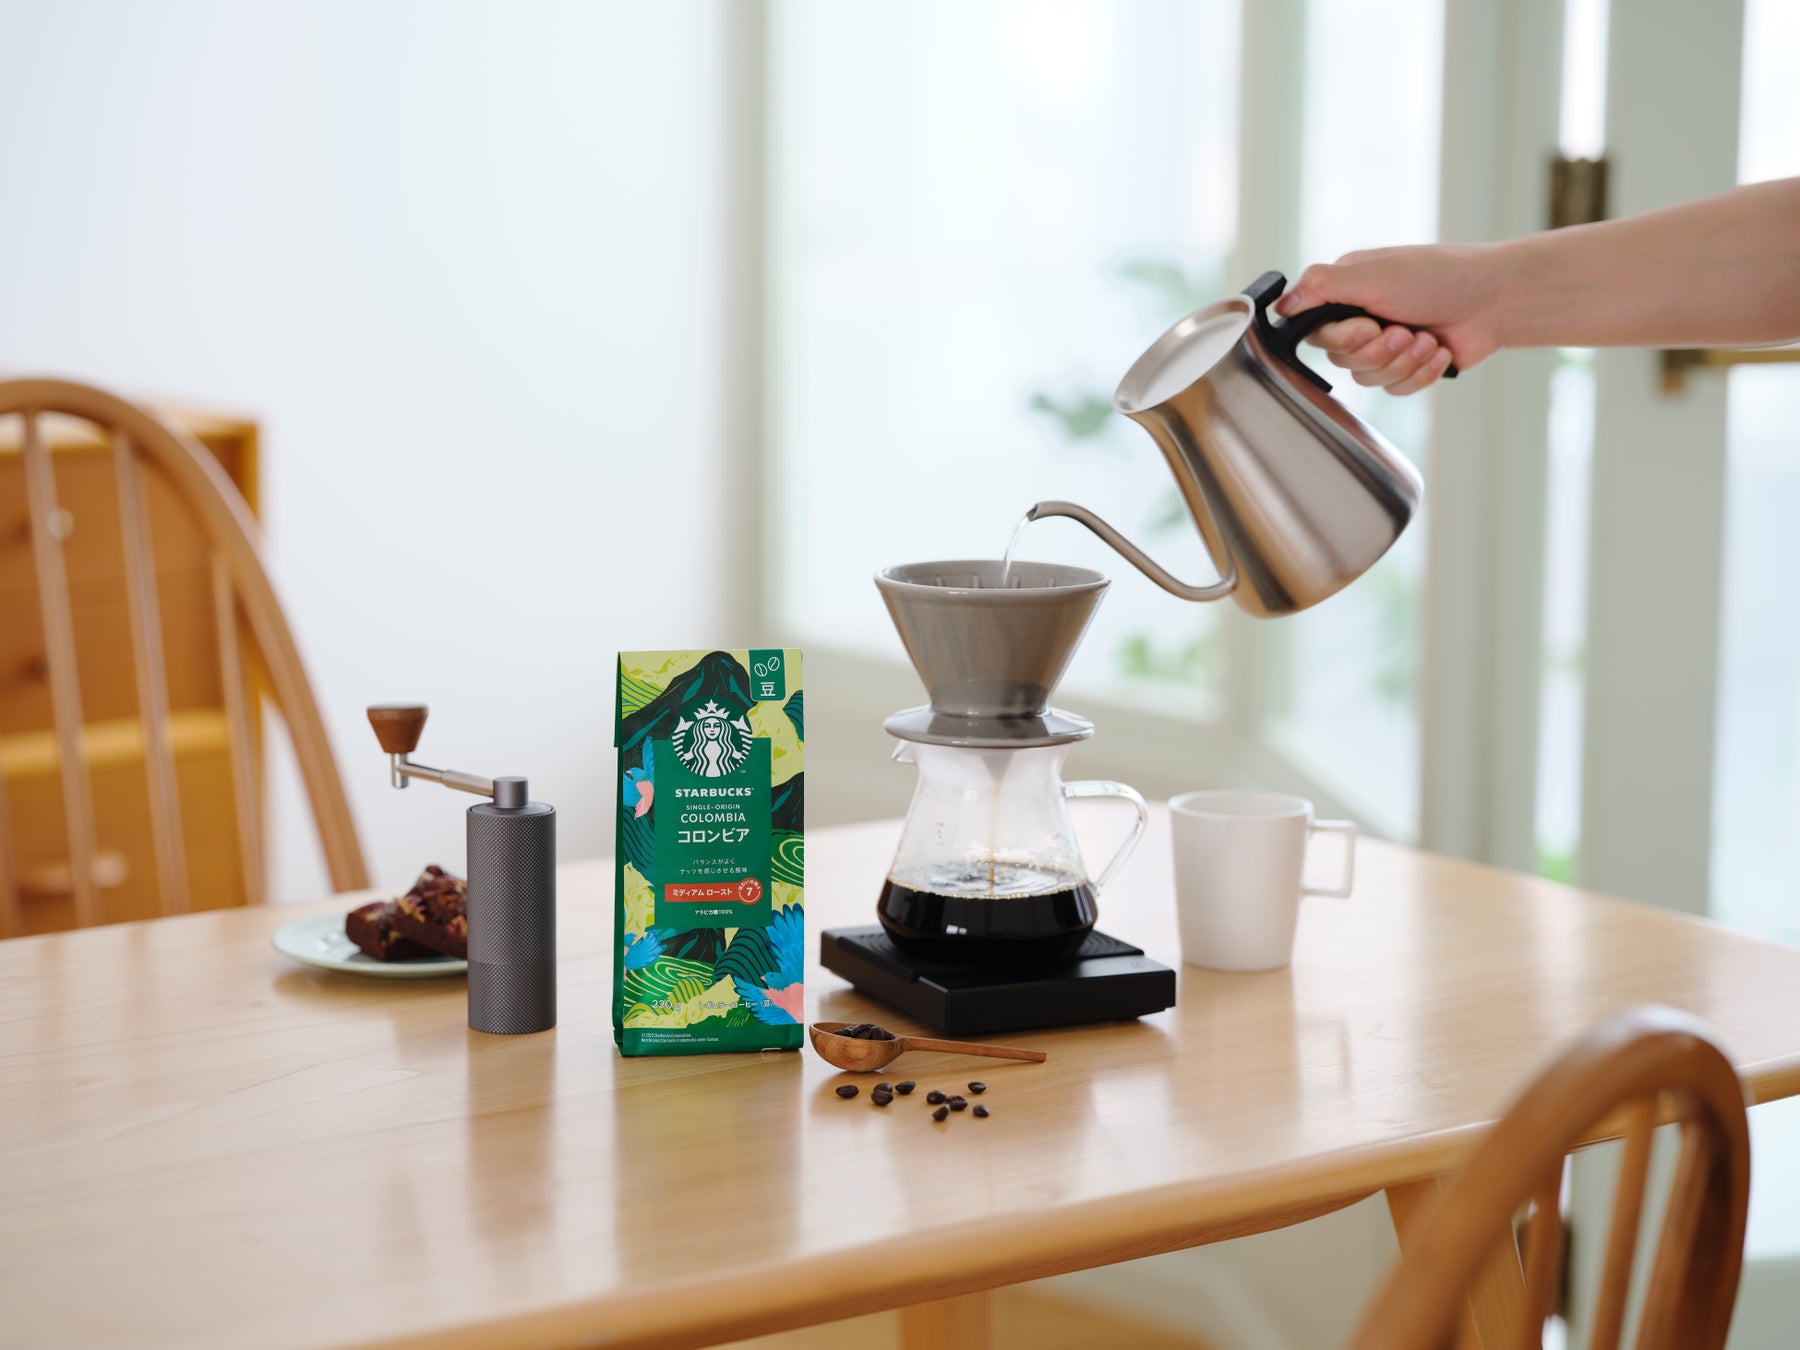 スターバックス家庭用コーヒー製品として初、シングルオリジンのレギュラーコーヒー(豆)「コロンビア」の販売を9月1日(金)より開始